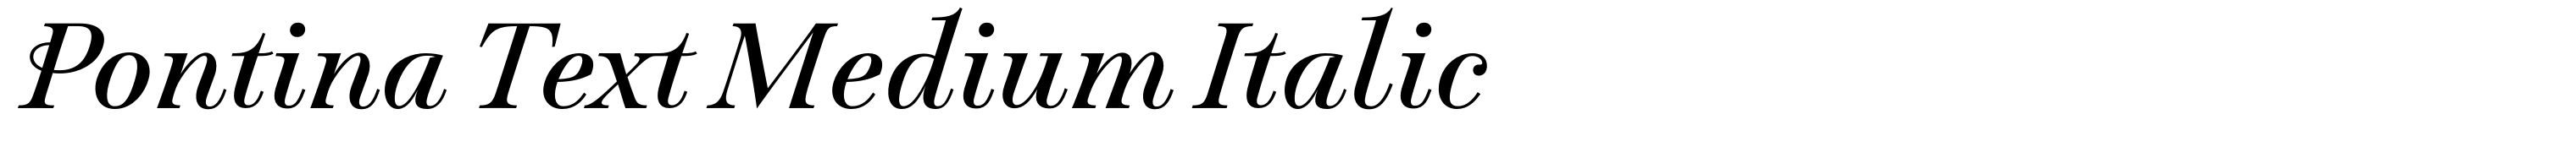 Pontina Text Medium Italic